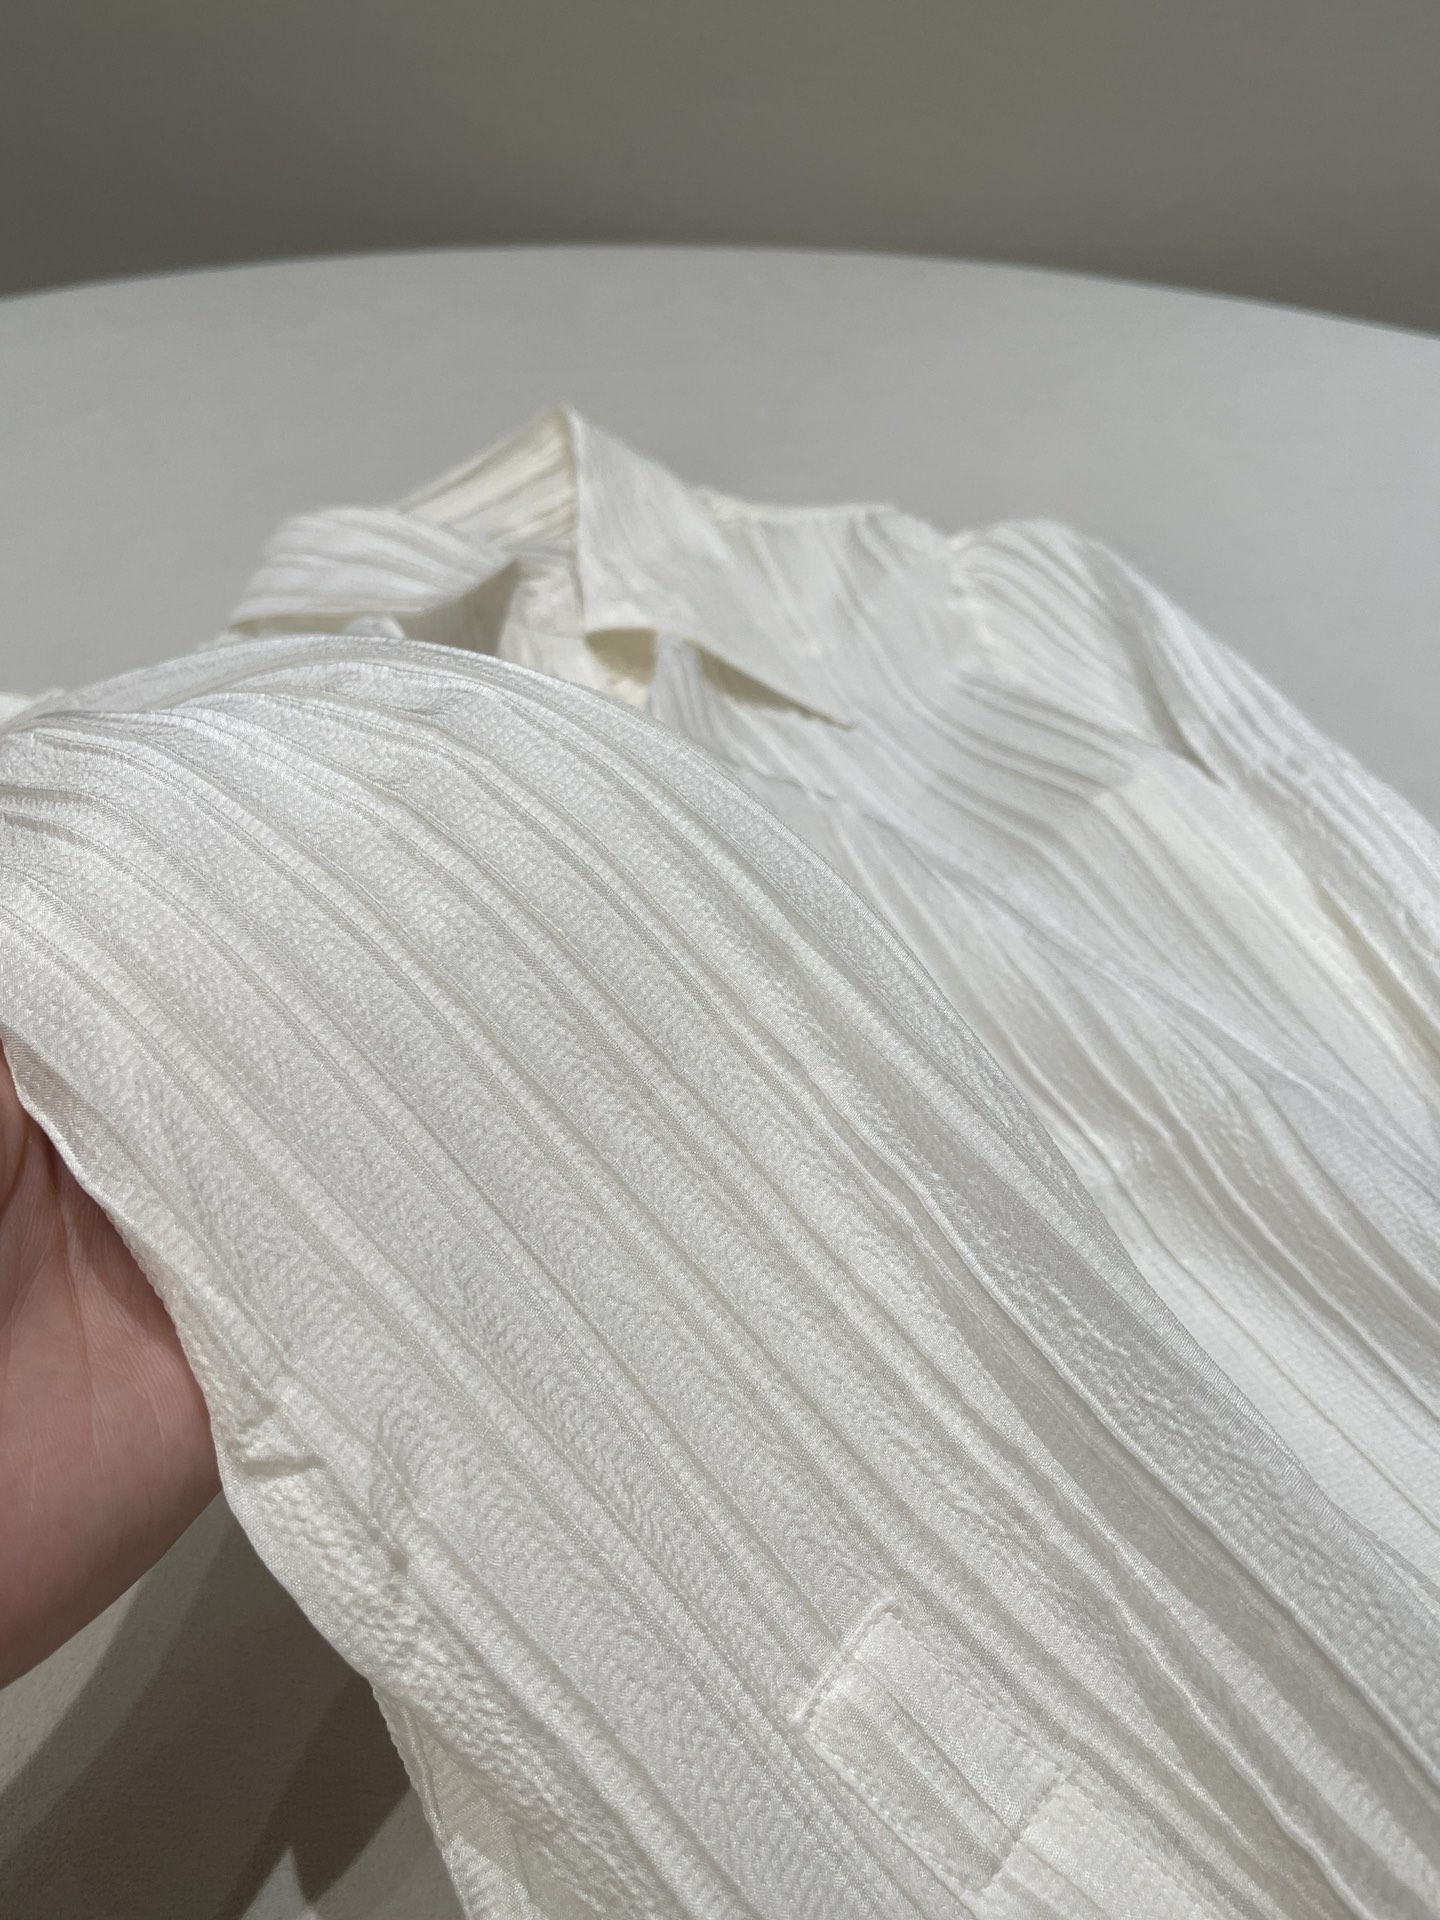 真丝弹力桑叠纺面料，特殊条纹型的真丝，打破了普通真丝的单调平面，肌理的叠层条感